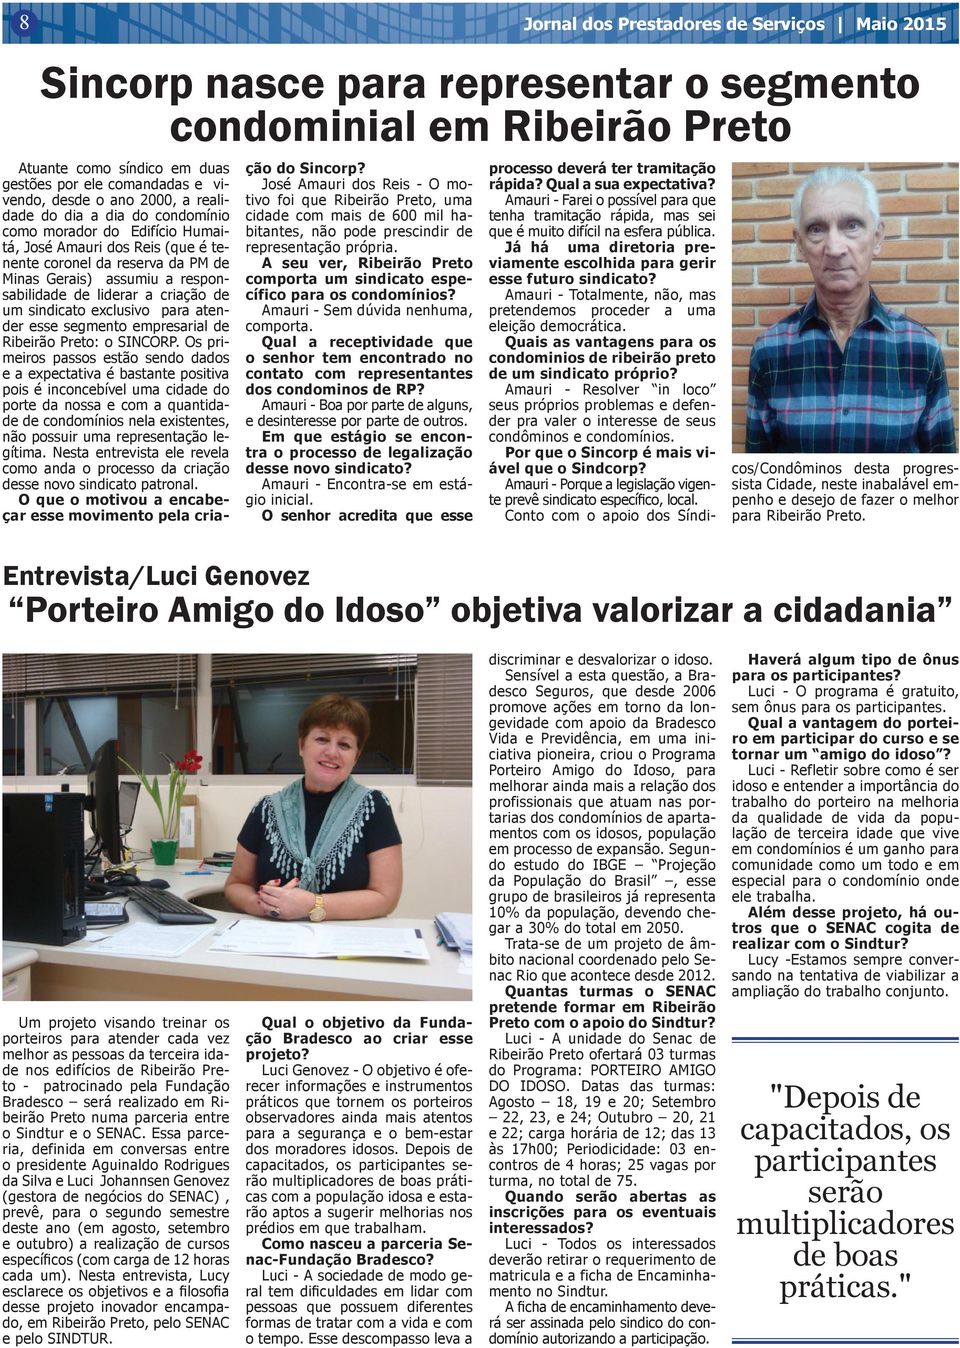 criação de um sindicato exclusivo para atender esse segmento empresarial de Ribeirão Preto: o SINCORP.